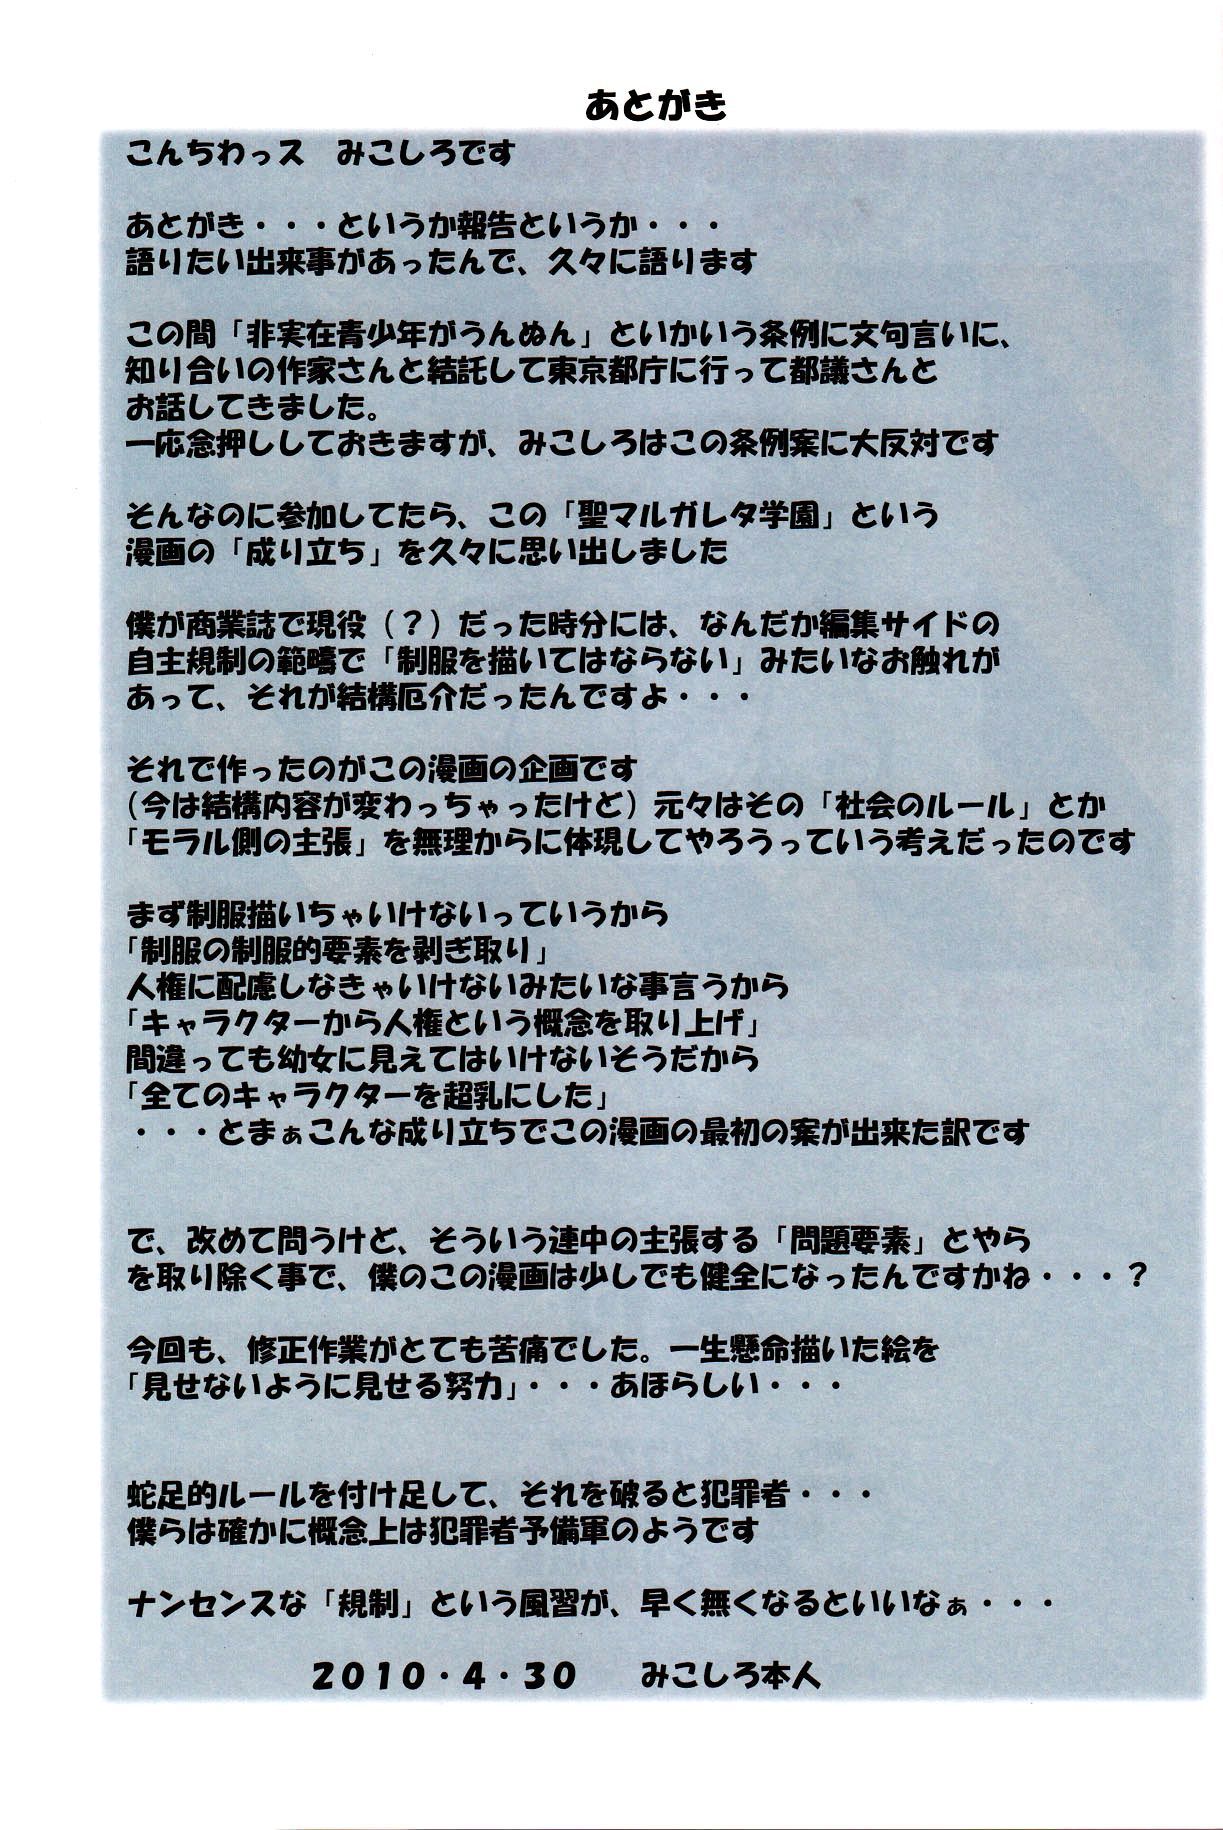 (comic1â˜†4) algolagnia (mikoshiro honnin) st. मार्गरेटा gakuen काले फ़ाइल 2 b.e.c. स्कैन हिस्सा 3